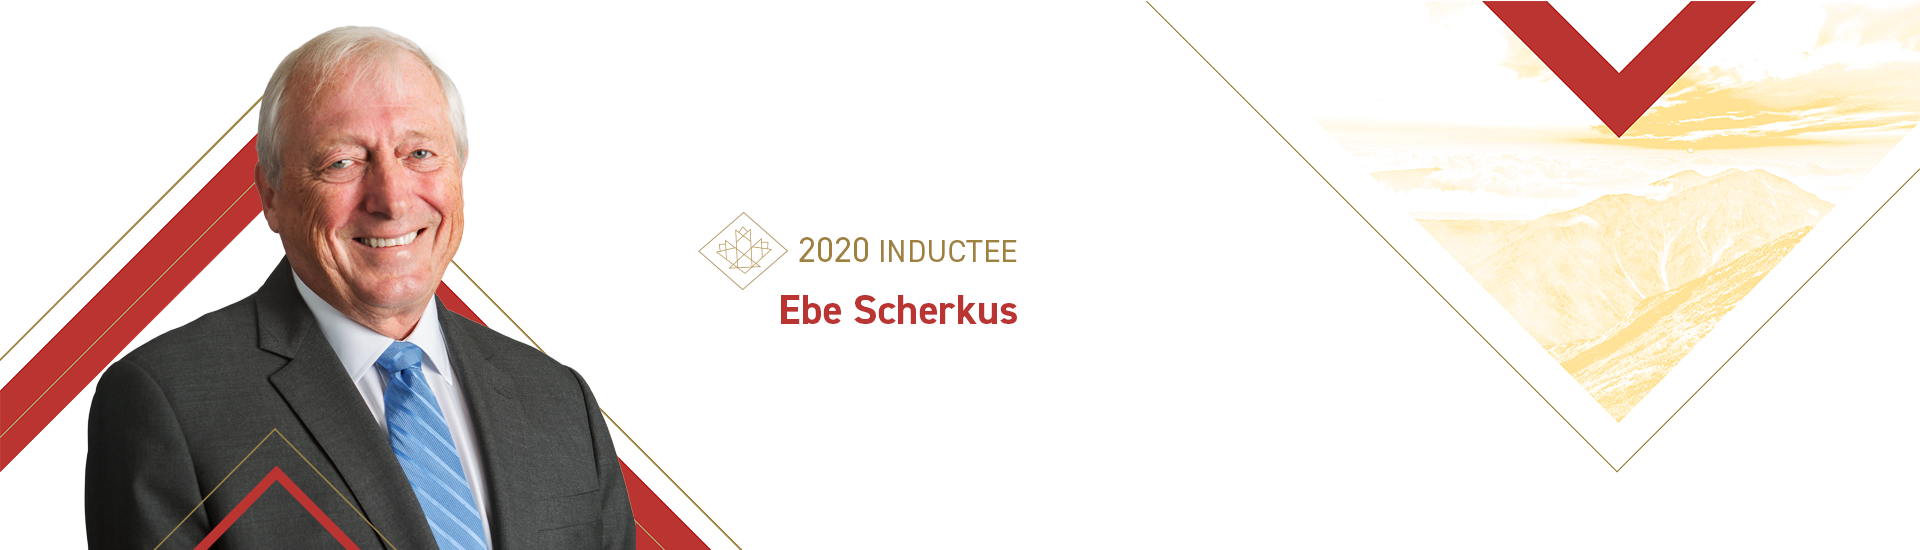 Ebe Scherkus (b. 1952)